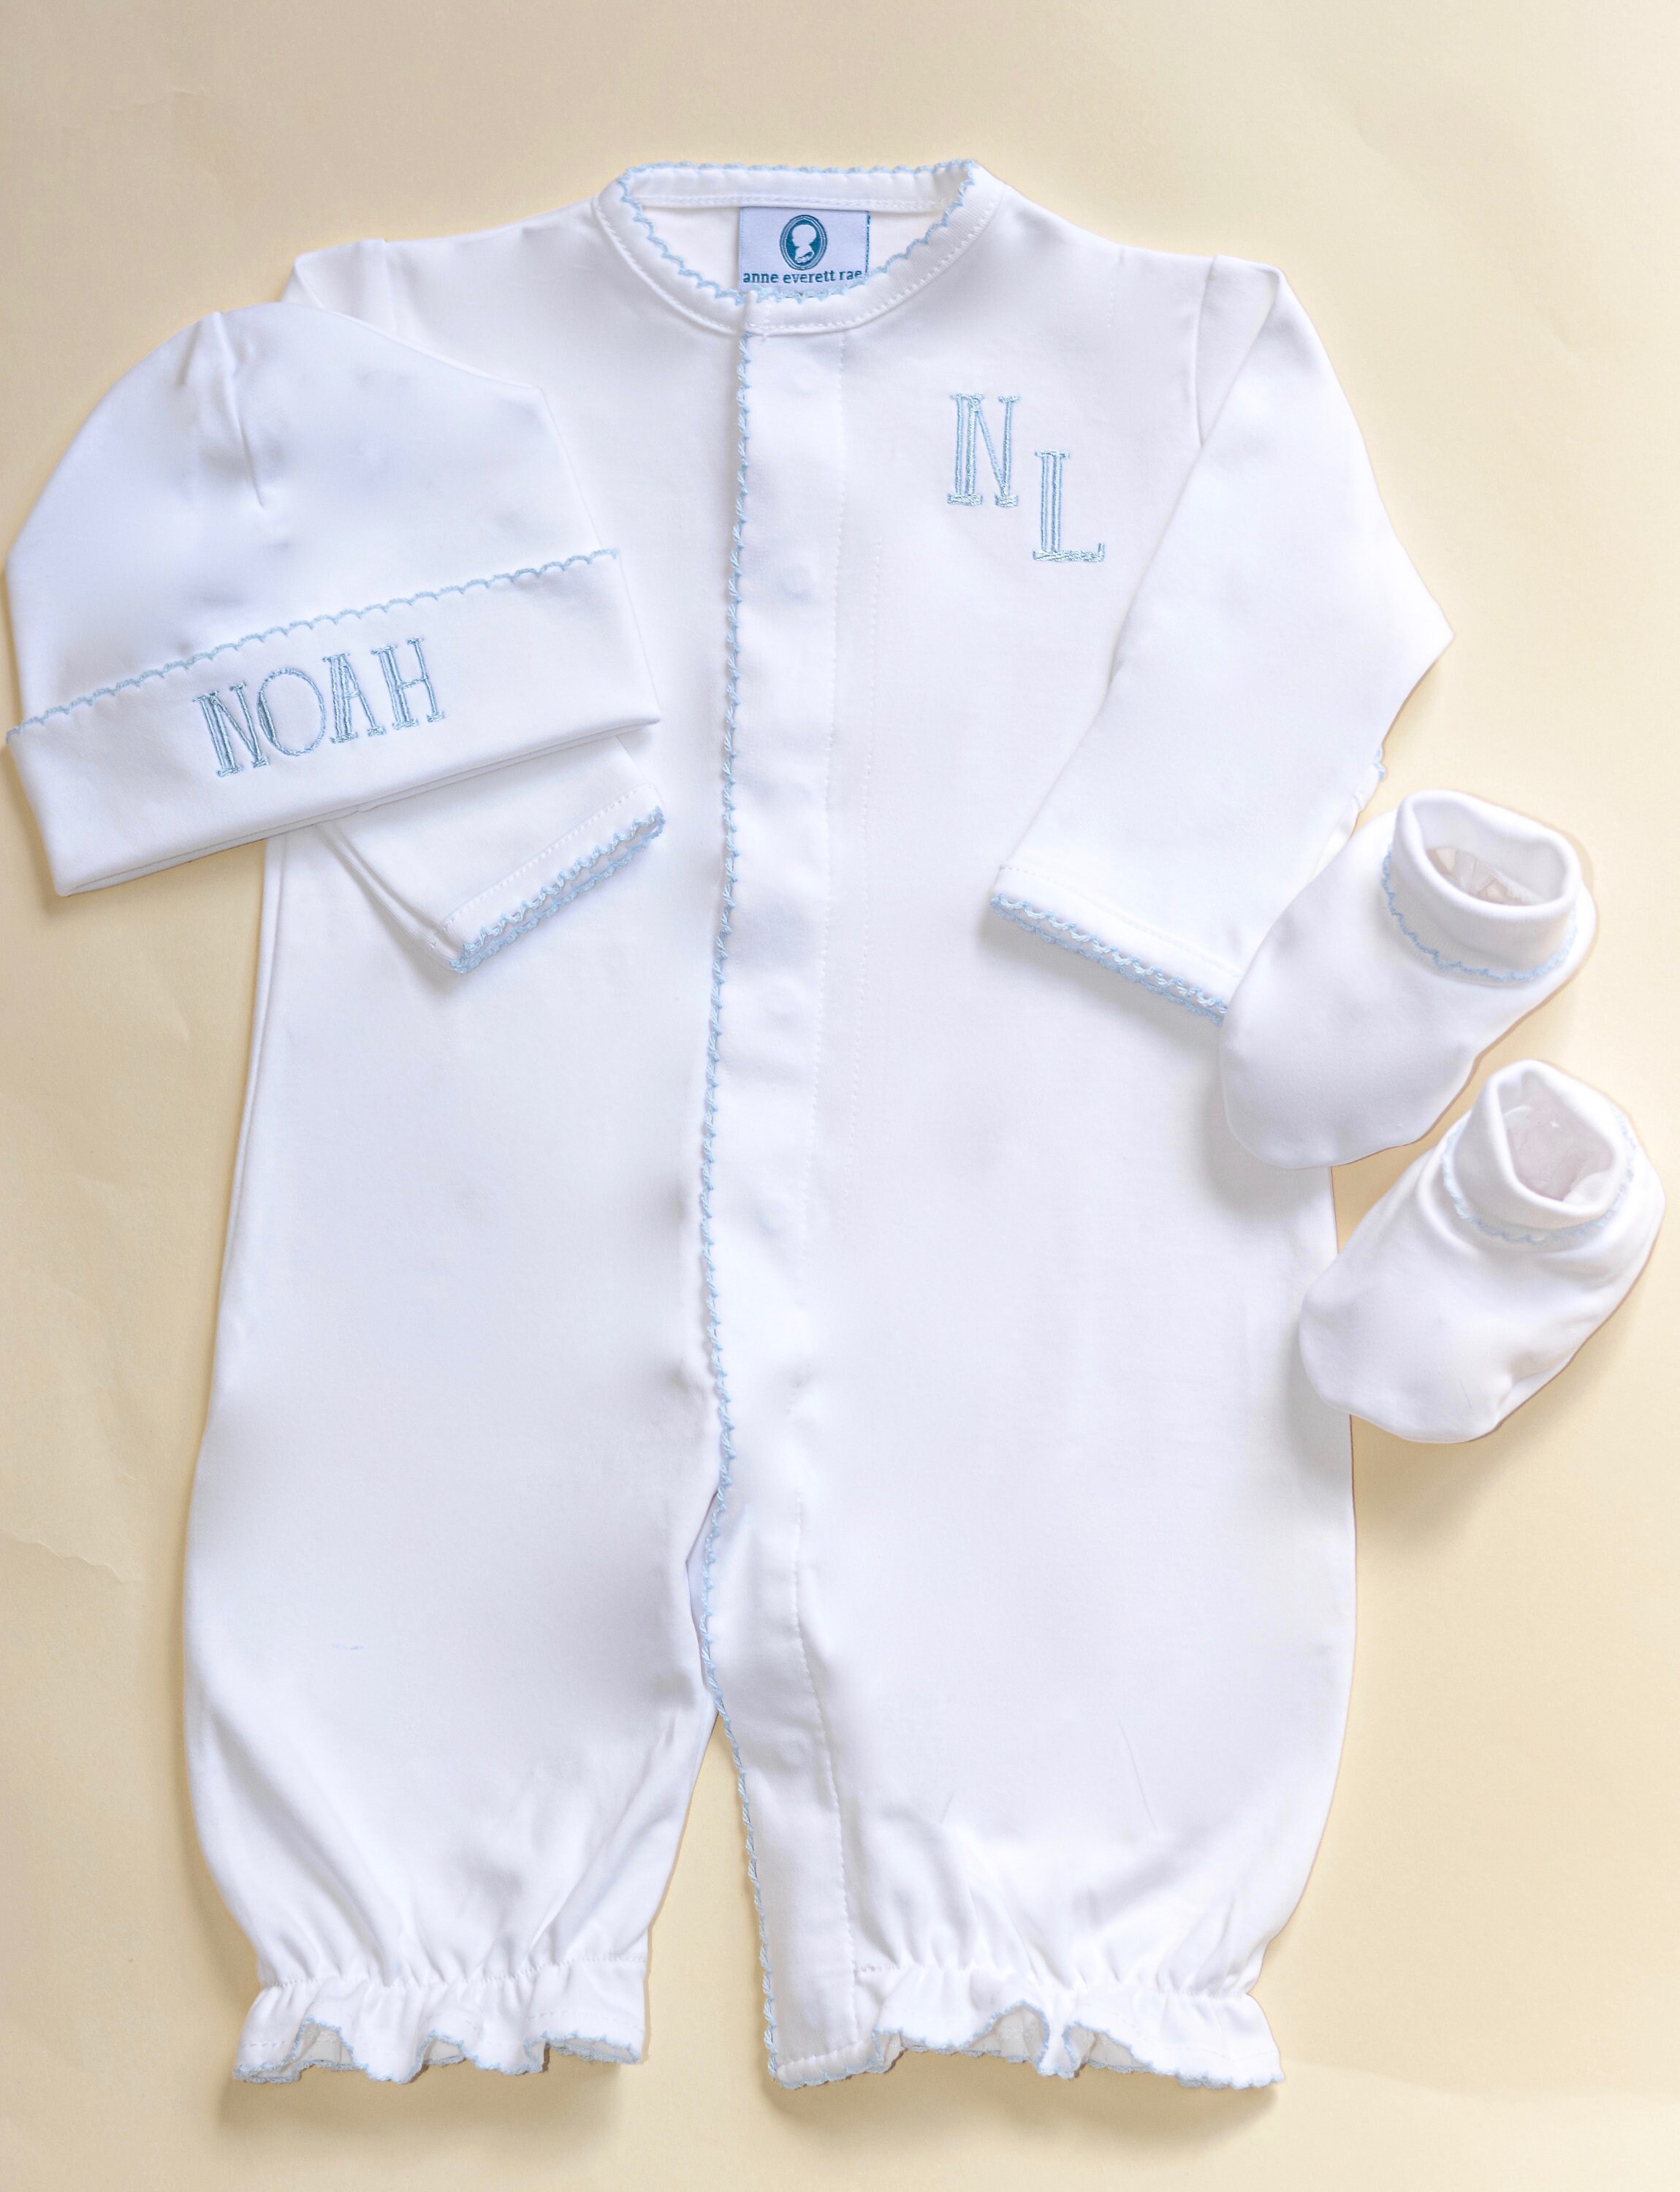 Smocked Sleeper New Baby Gift Monogram Newborn Outfit Pima Cotton Preemie Size Coming Home Footie Kleding Jongenskleding Babykleding voor jongens Kledingsets 